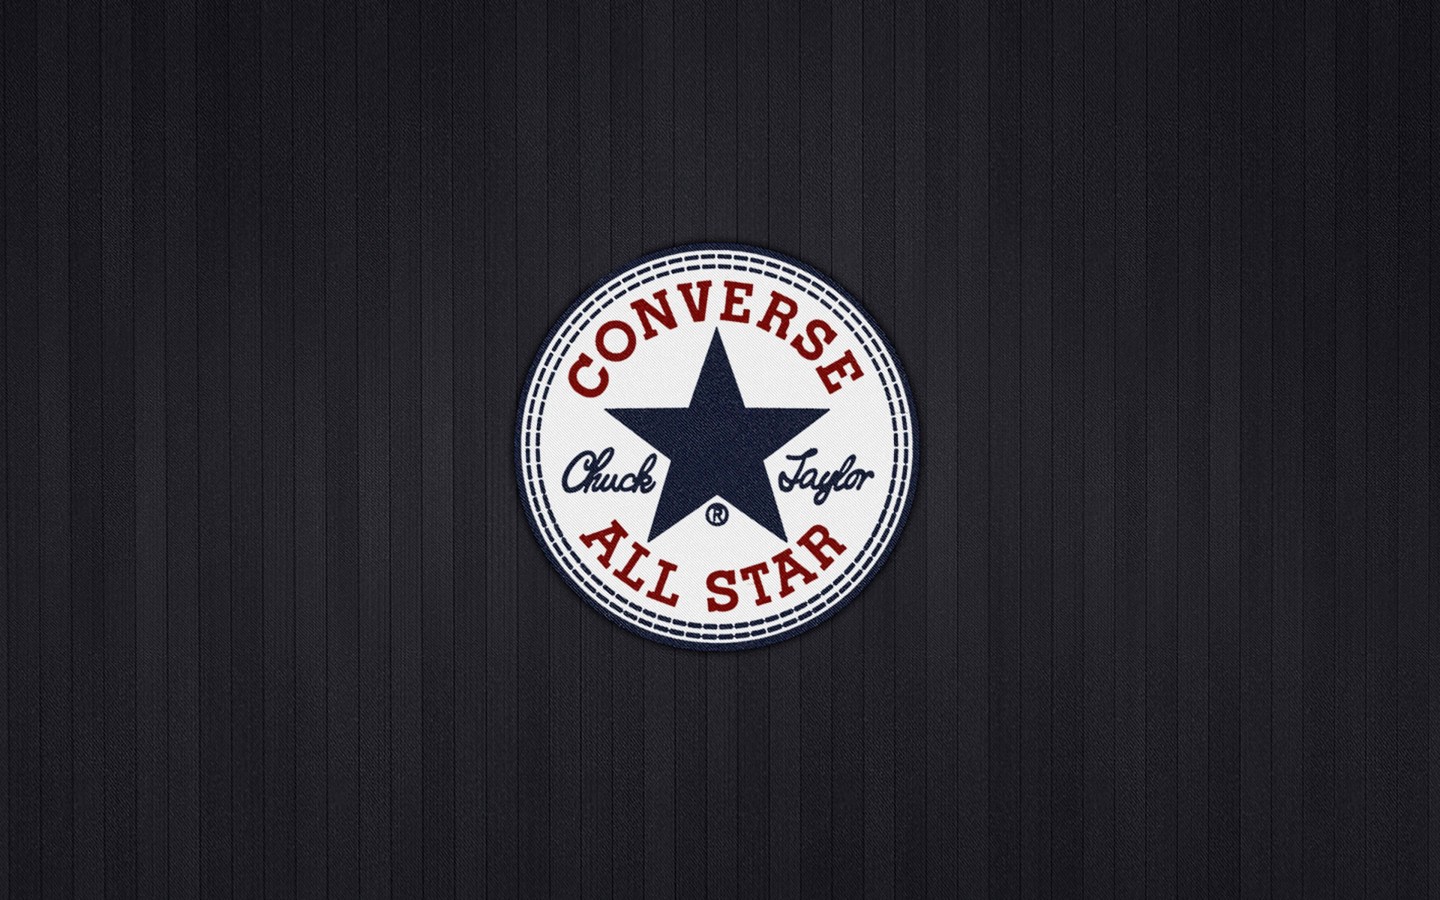 Converse All Star Wallpaper for Desktop 1440x900